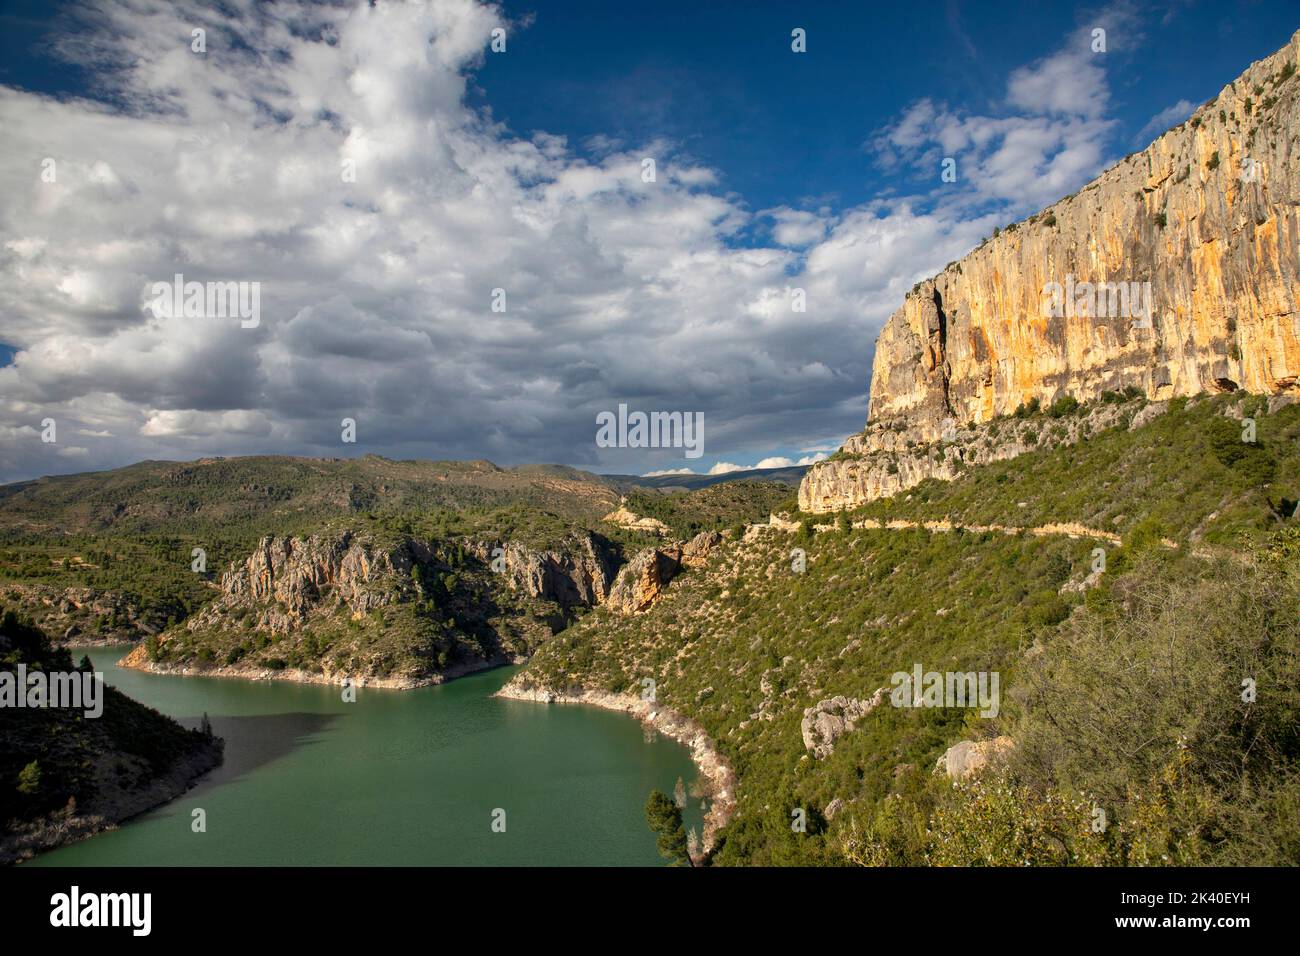 Lago de almacenamiento di Loriguilla, rama del río Turia con caras empinadas, España, Losa del Obispo Foto de stock